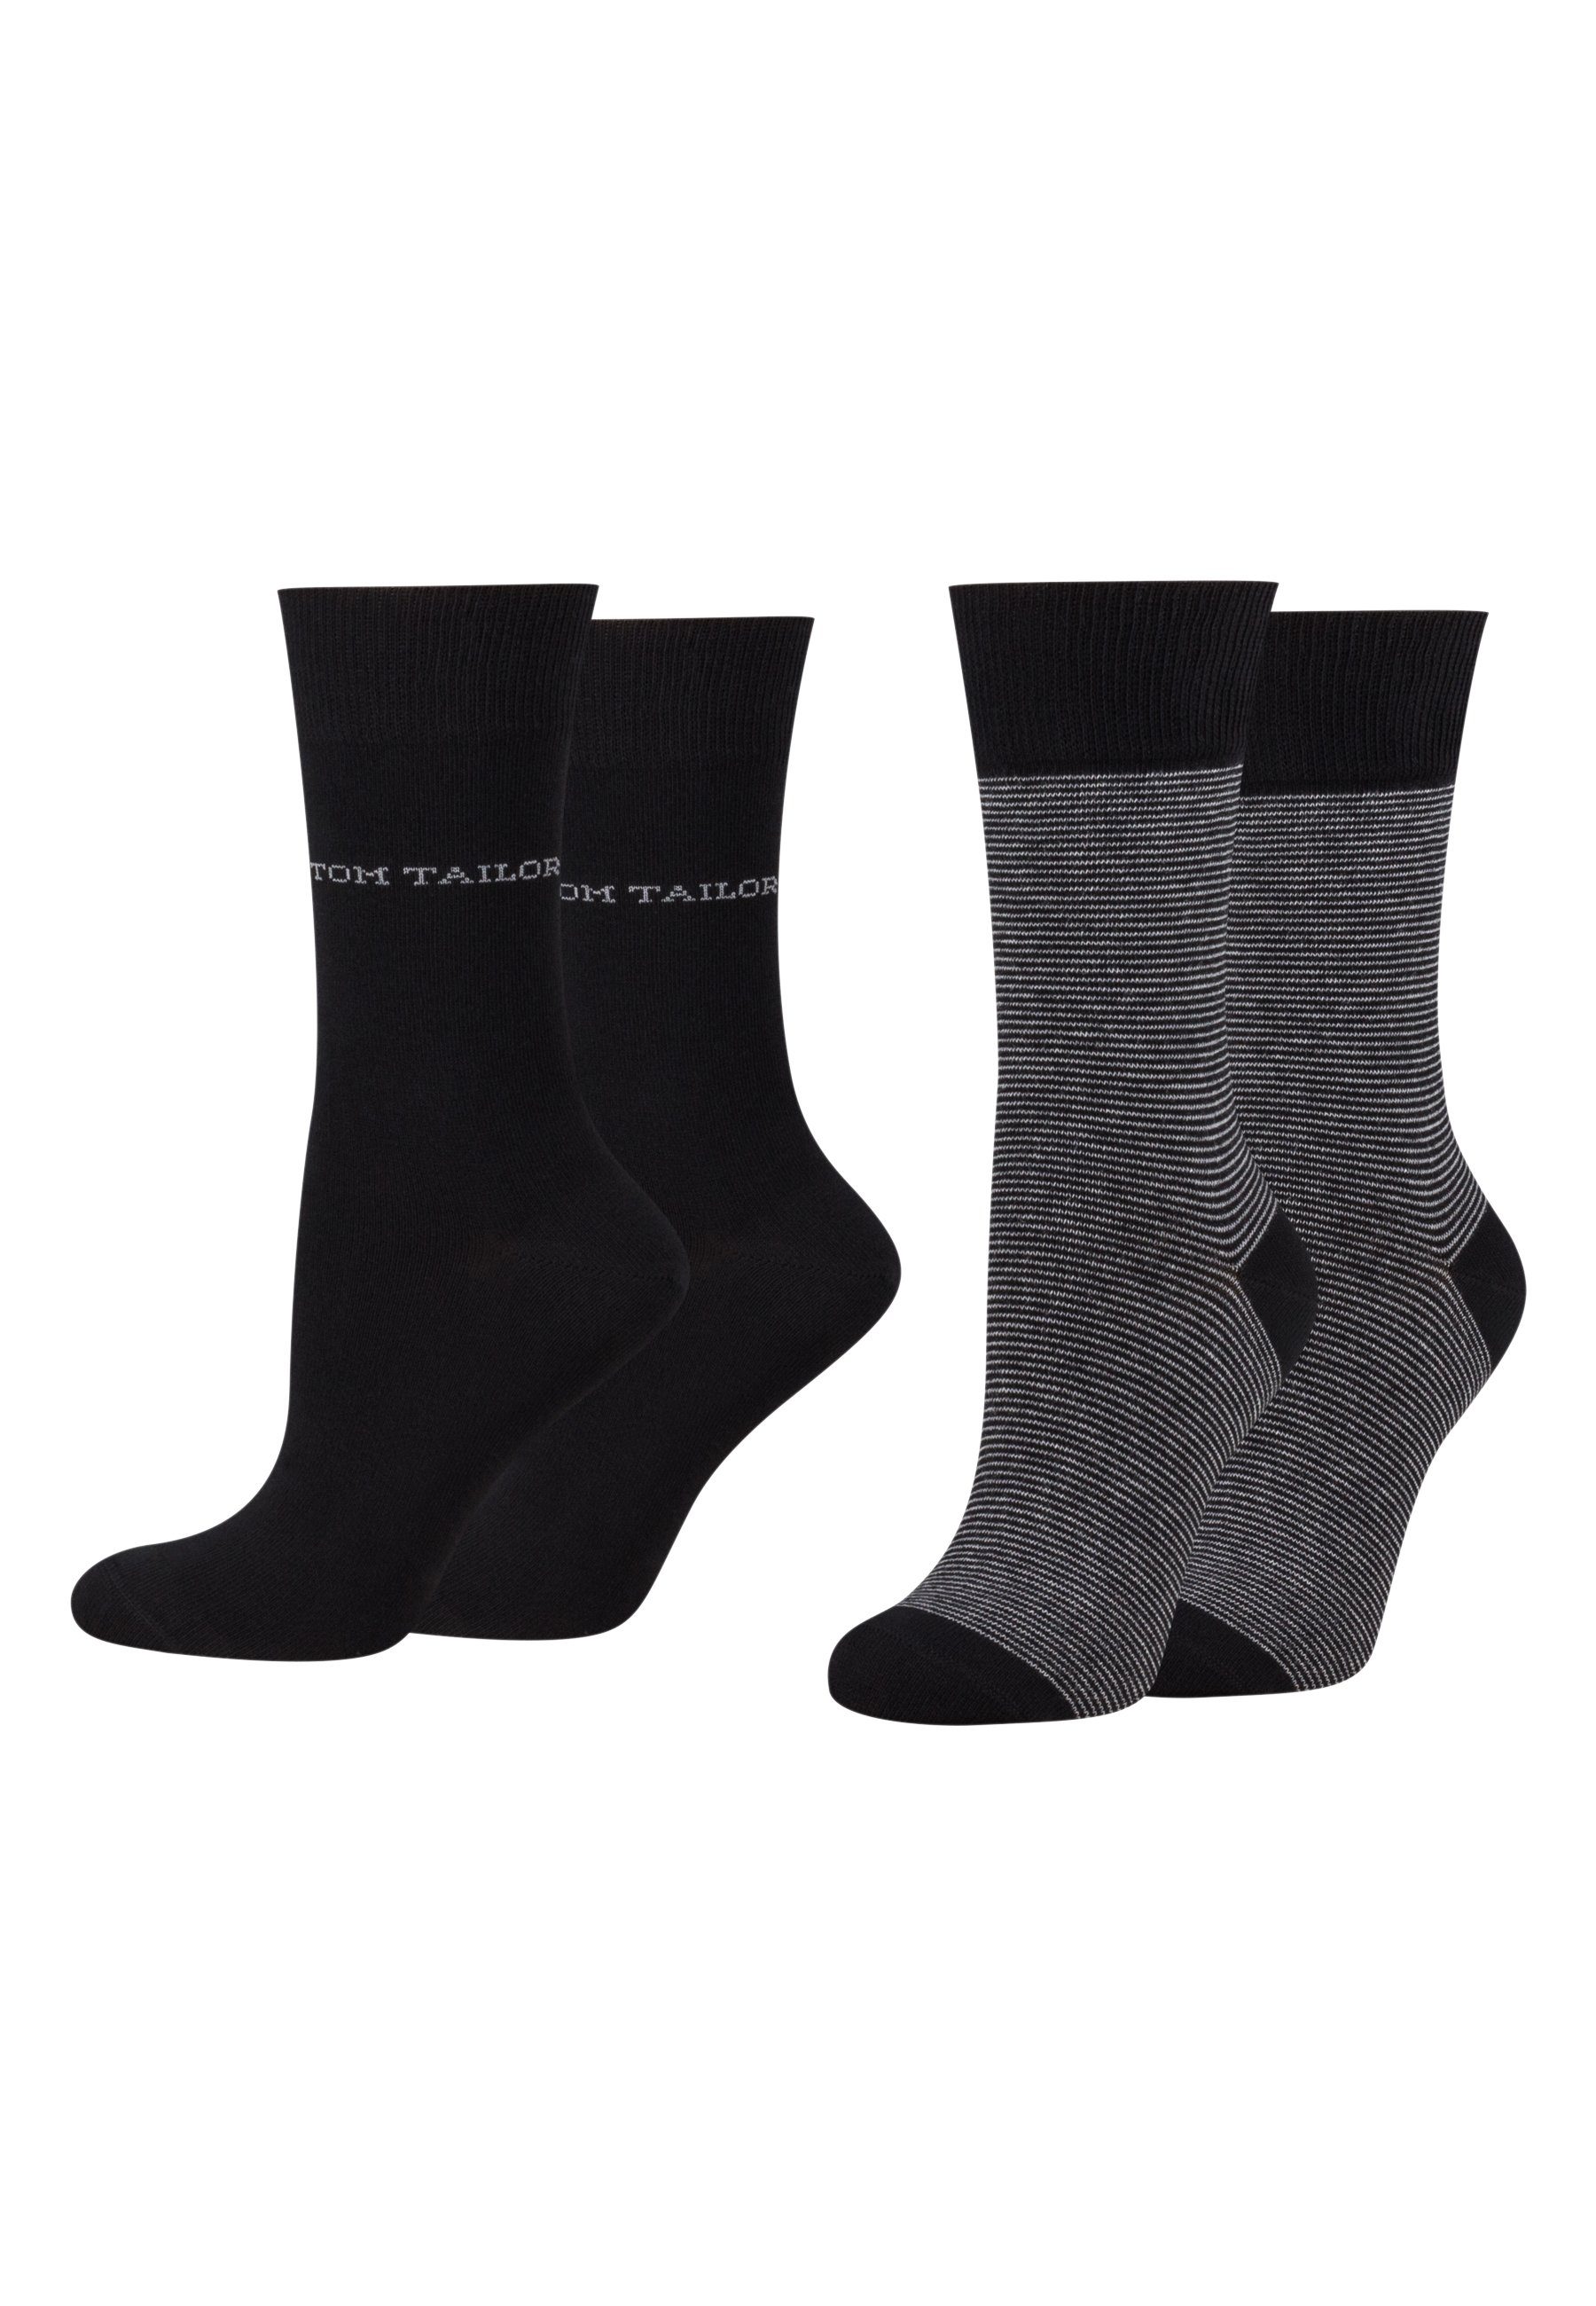 Socken Tailor women black Paar Tom stripe 9521610042_4 TAILOR basic 4 2er socks TOM